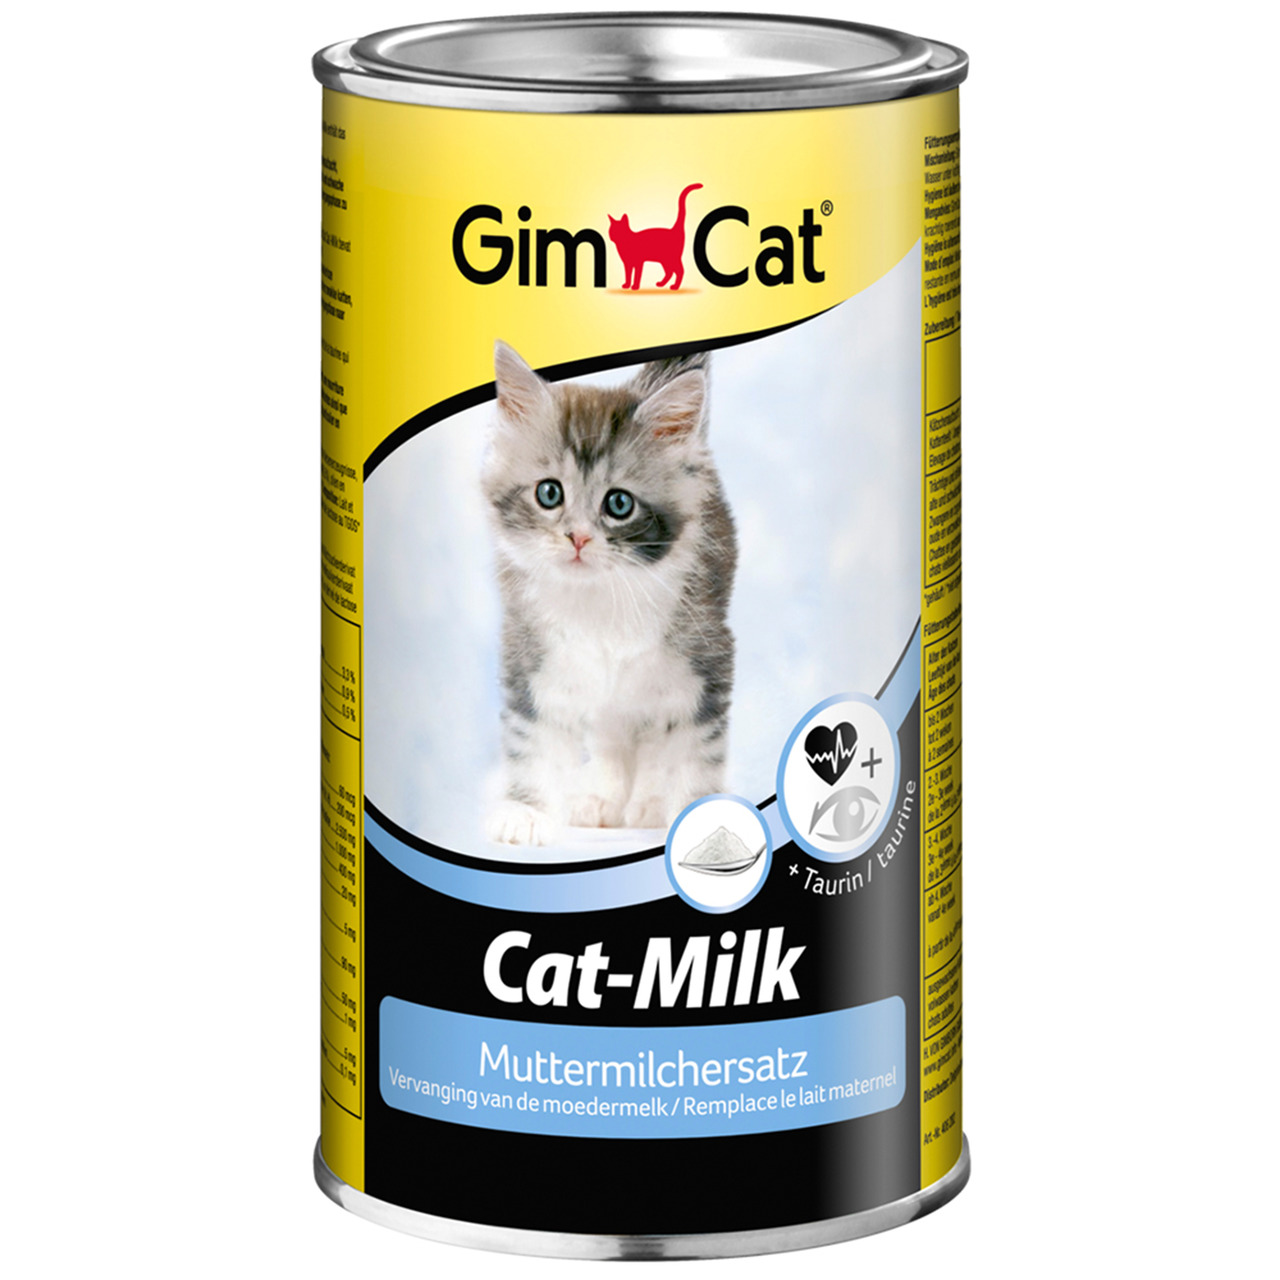 GimCat Cat-Milk Muttermilchersatz Katzenmilch 200 g